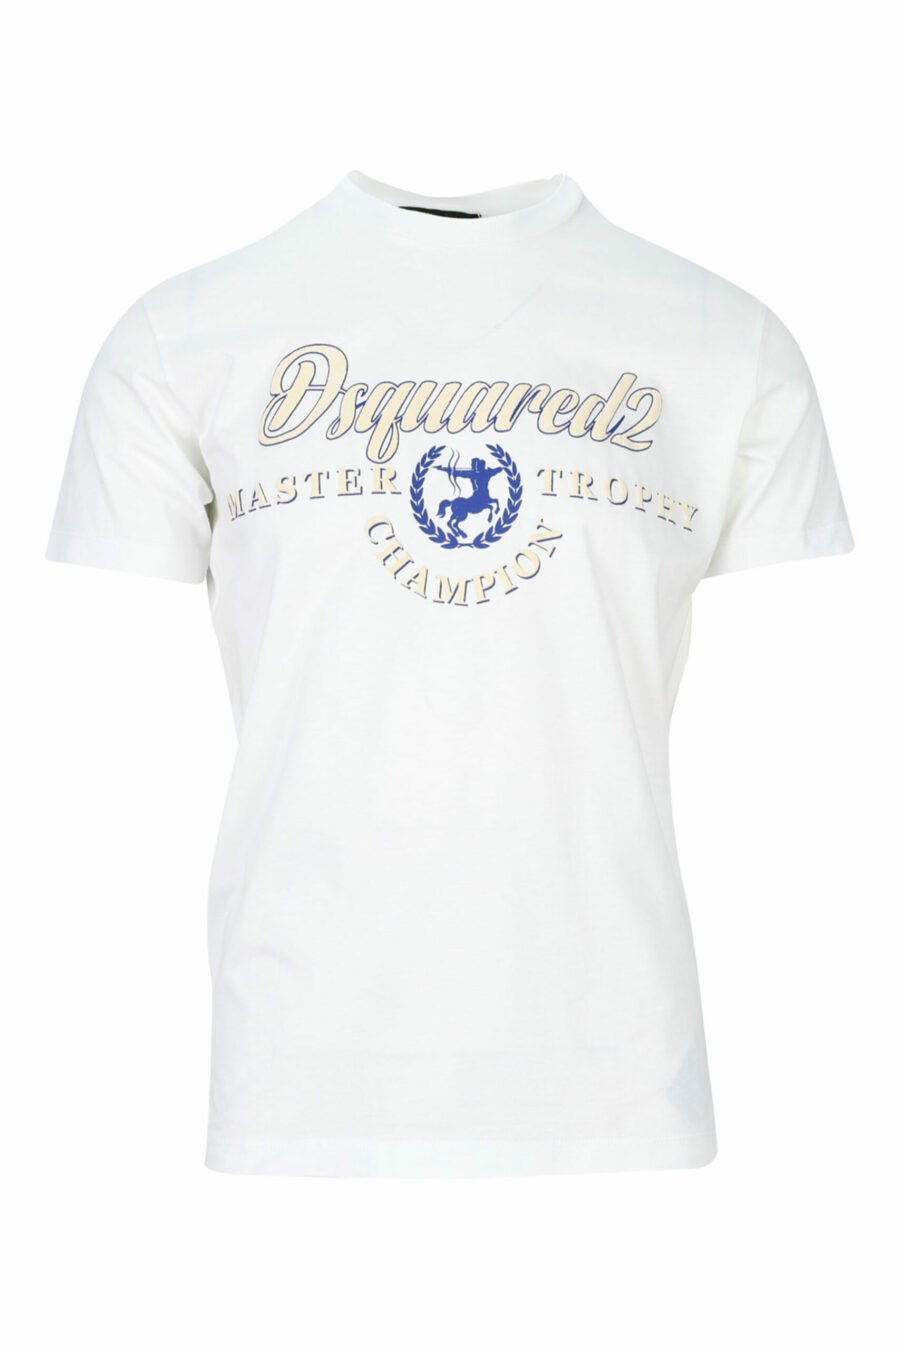 T-shirt branca com maxilogo branco e azul com escudo - 8054148159665 scaled